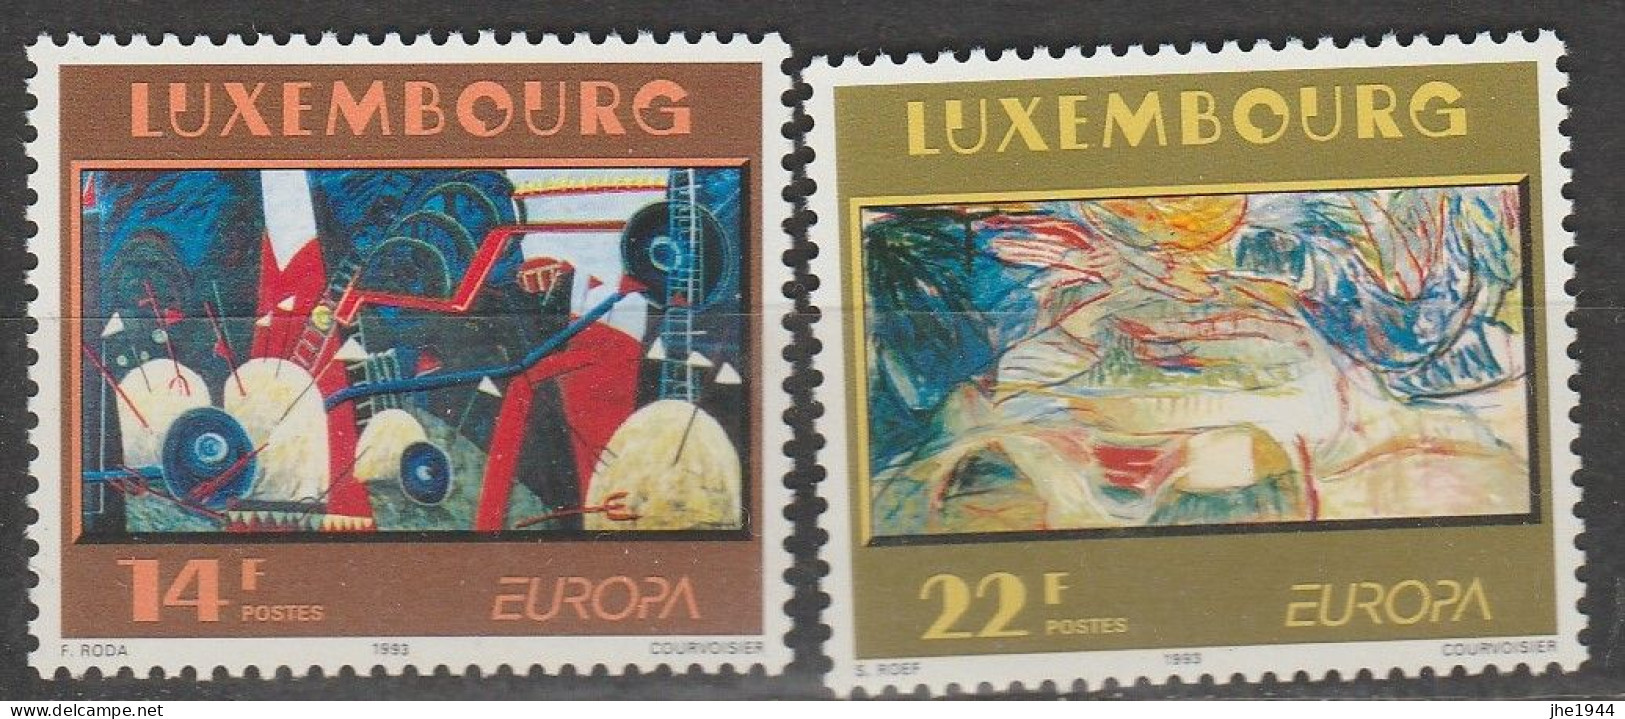 Europa 1993 Art contemporain Voir liste des timbres à vendre **